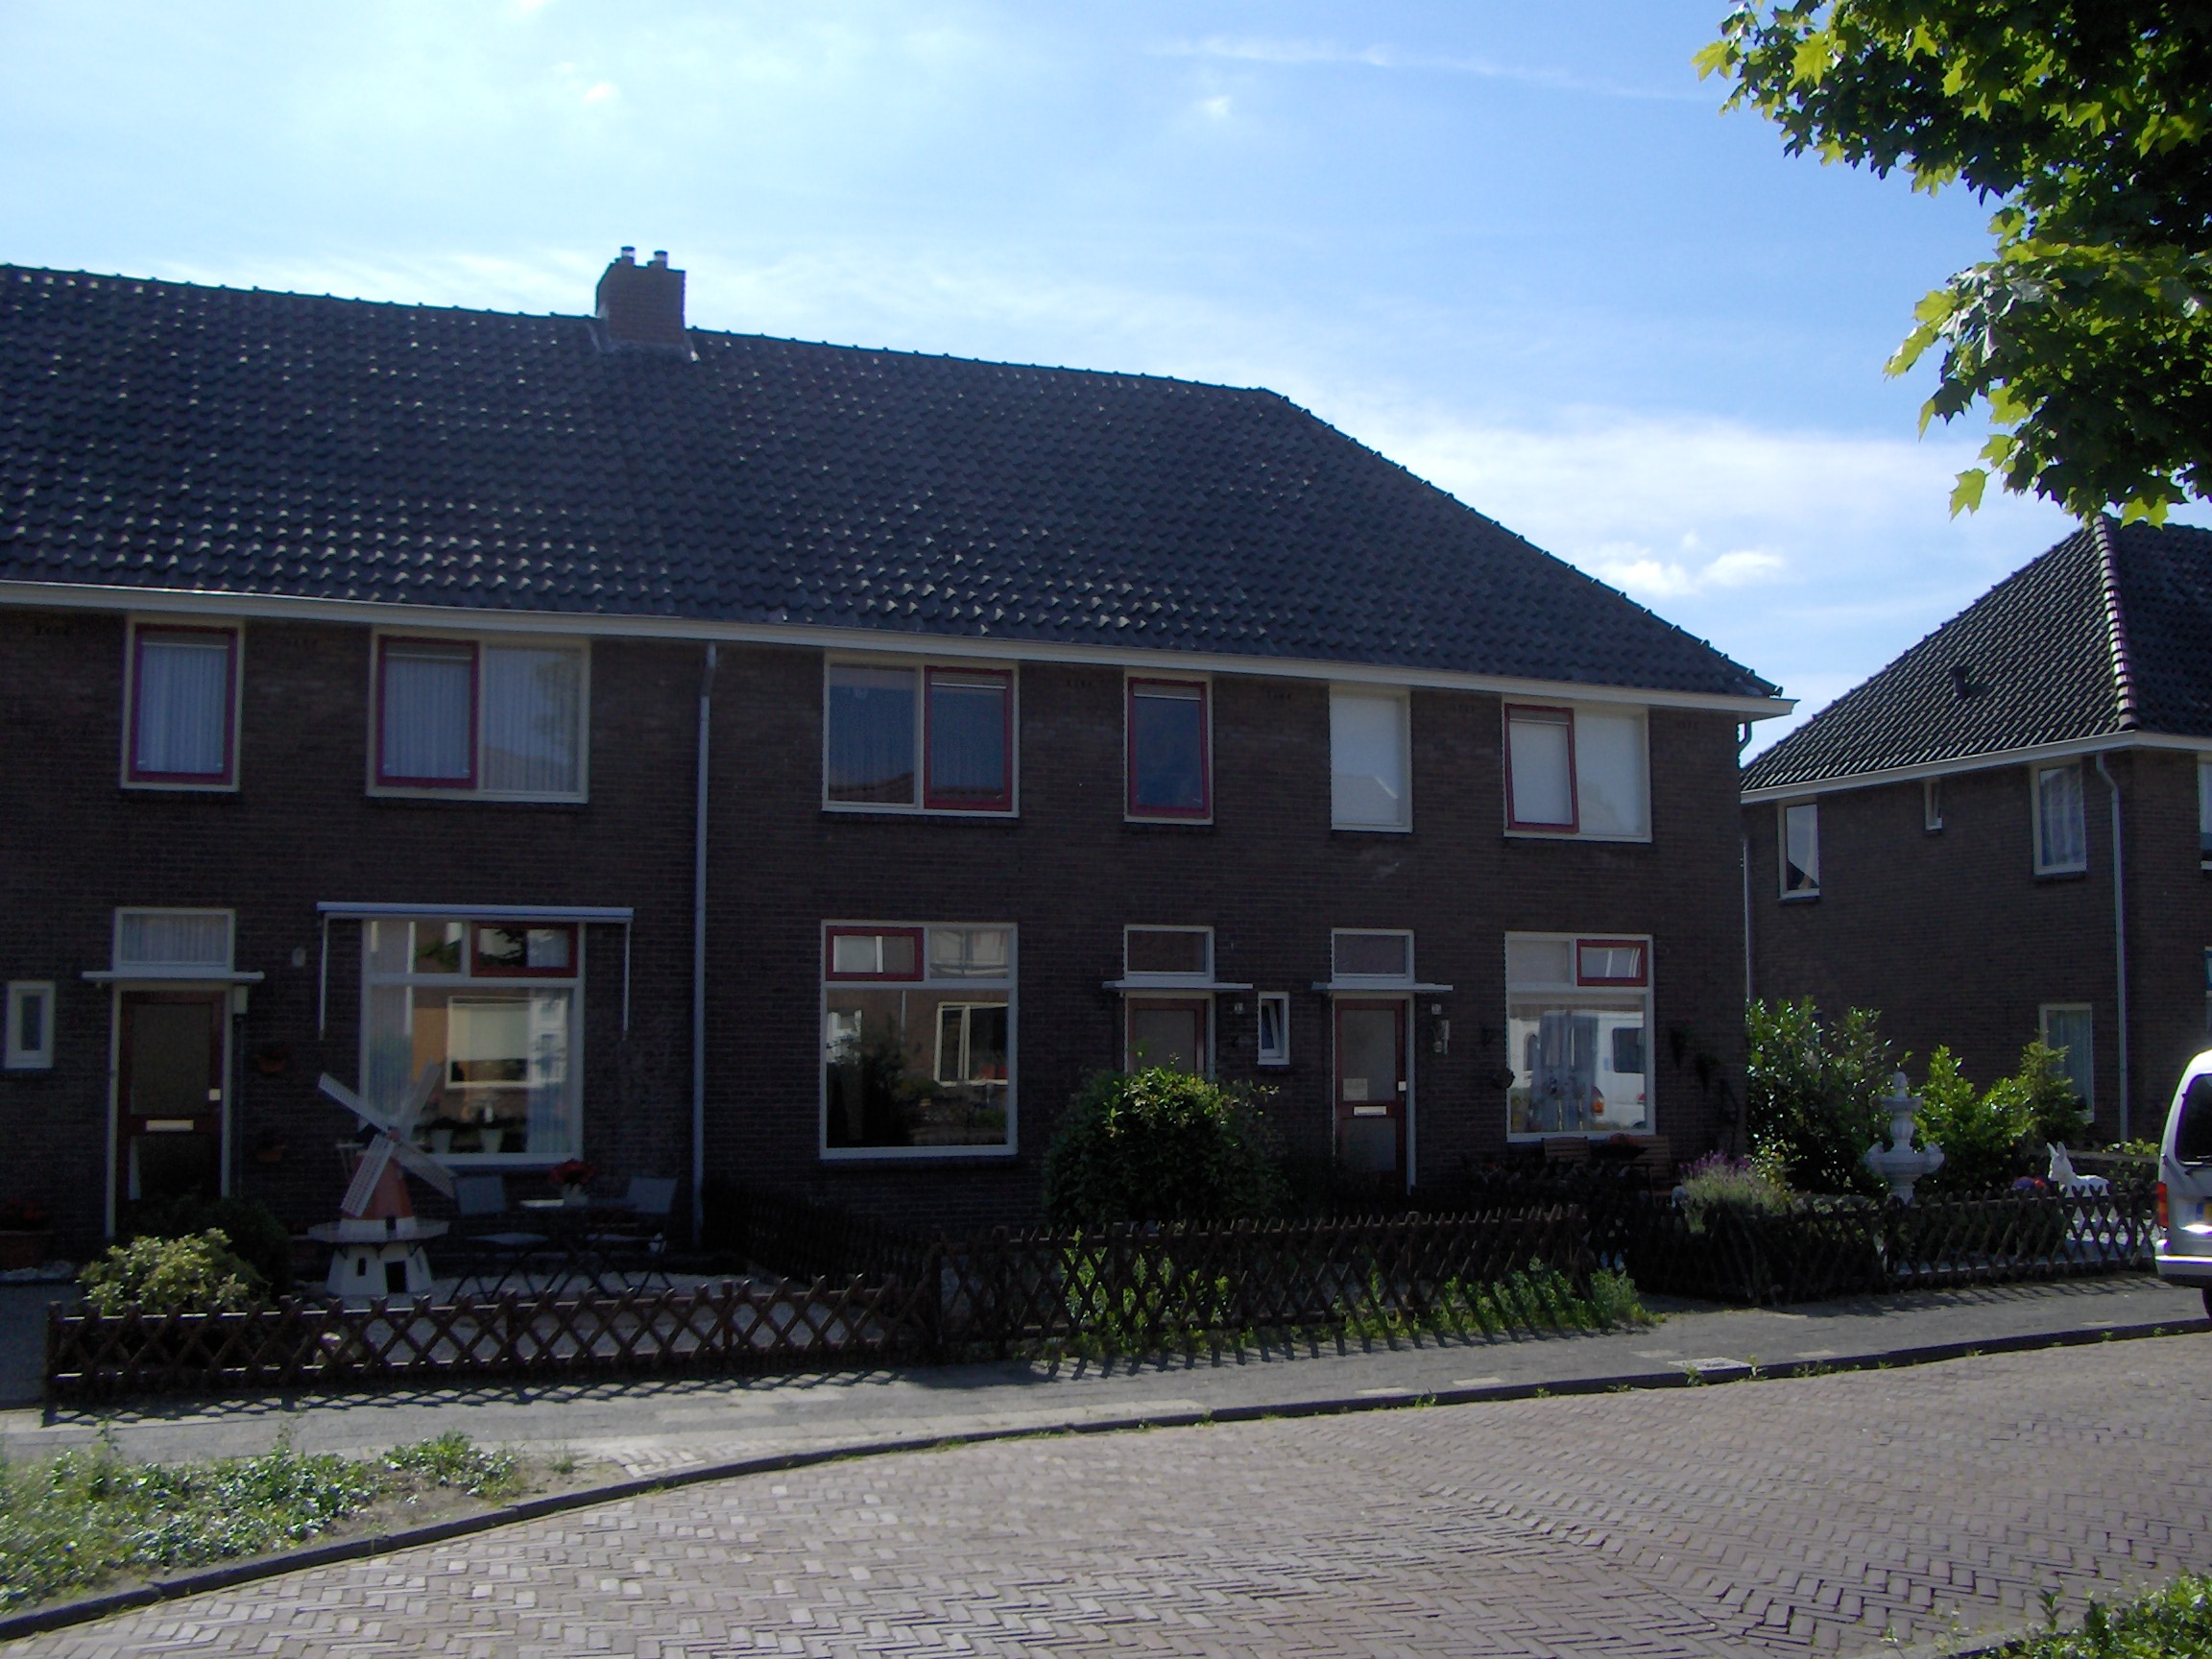 Rozenstraat 33, 7943 AJ Meppel, Nederland